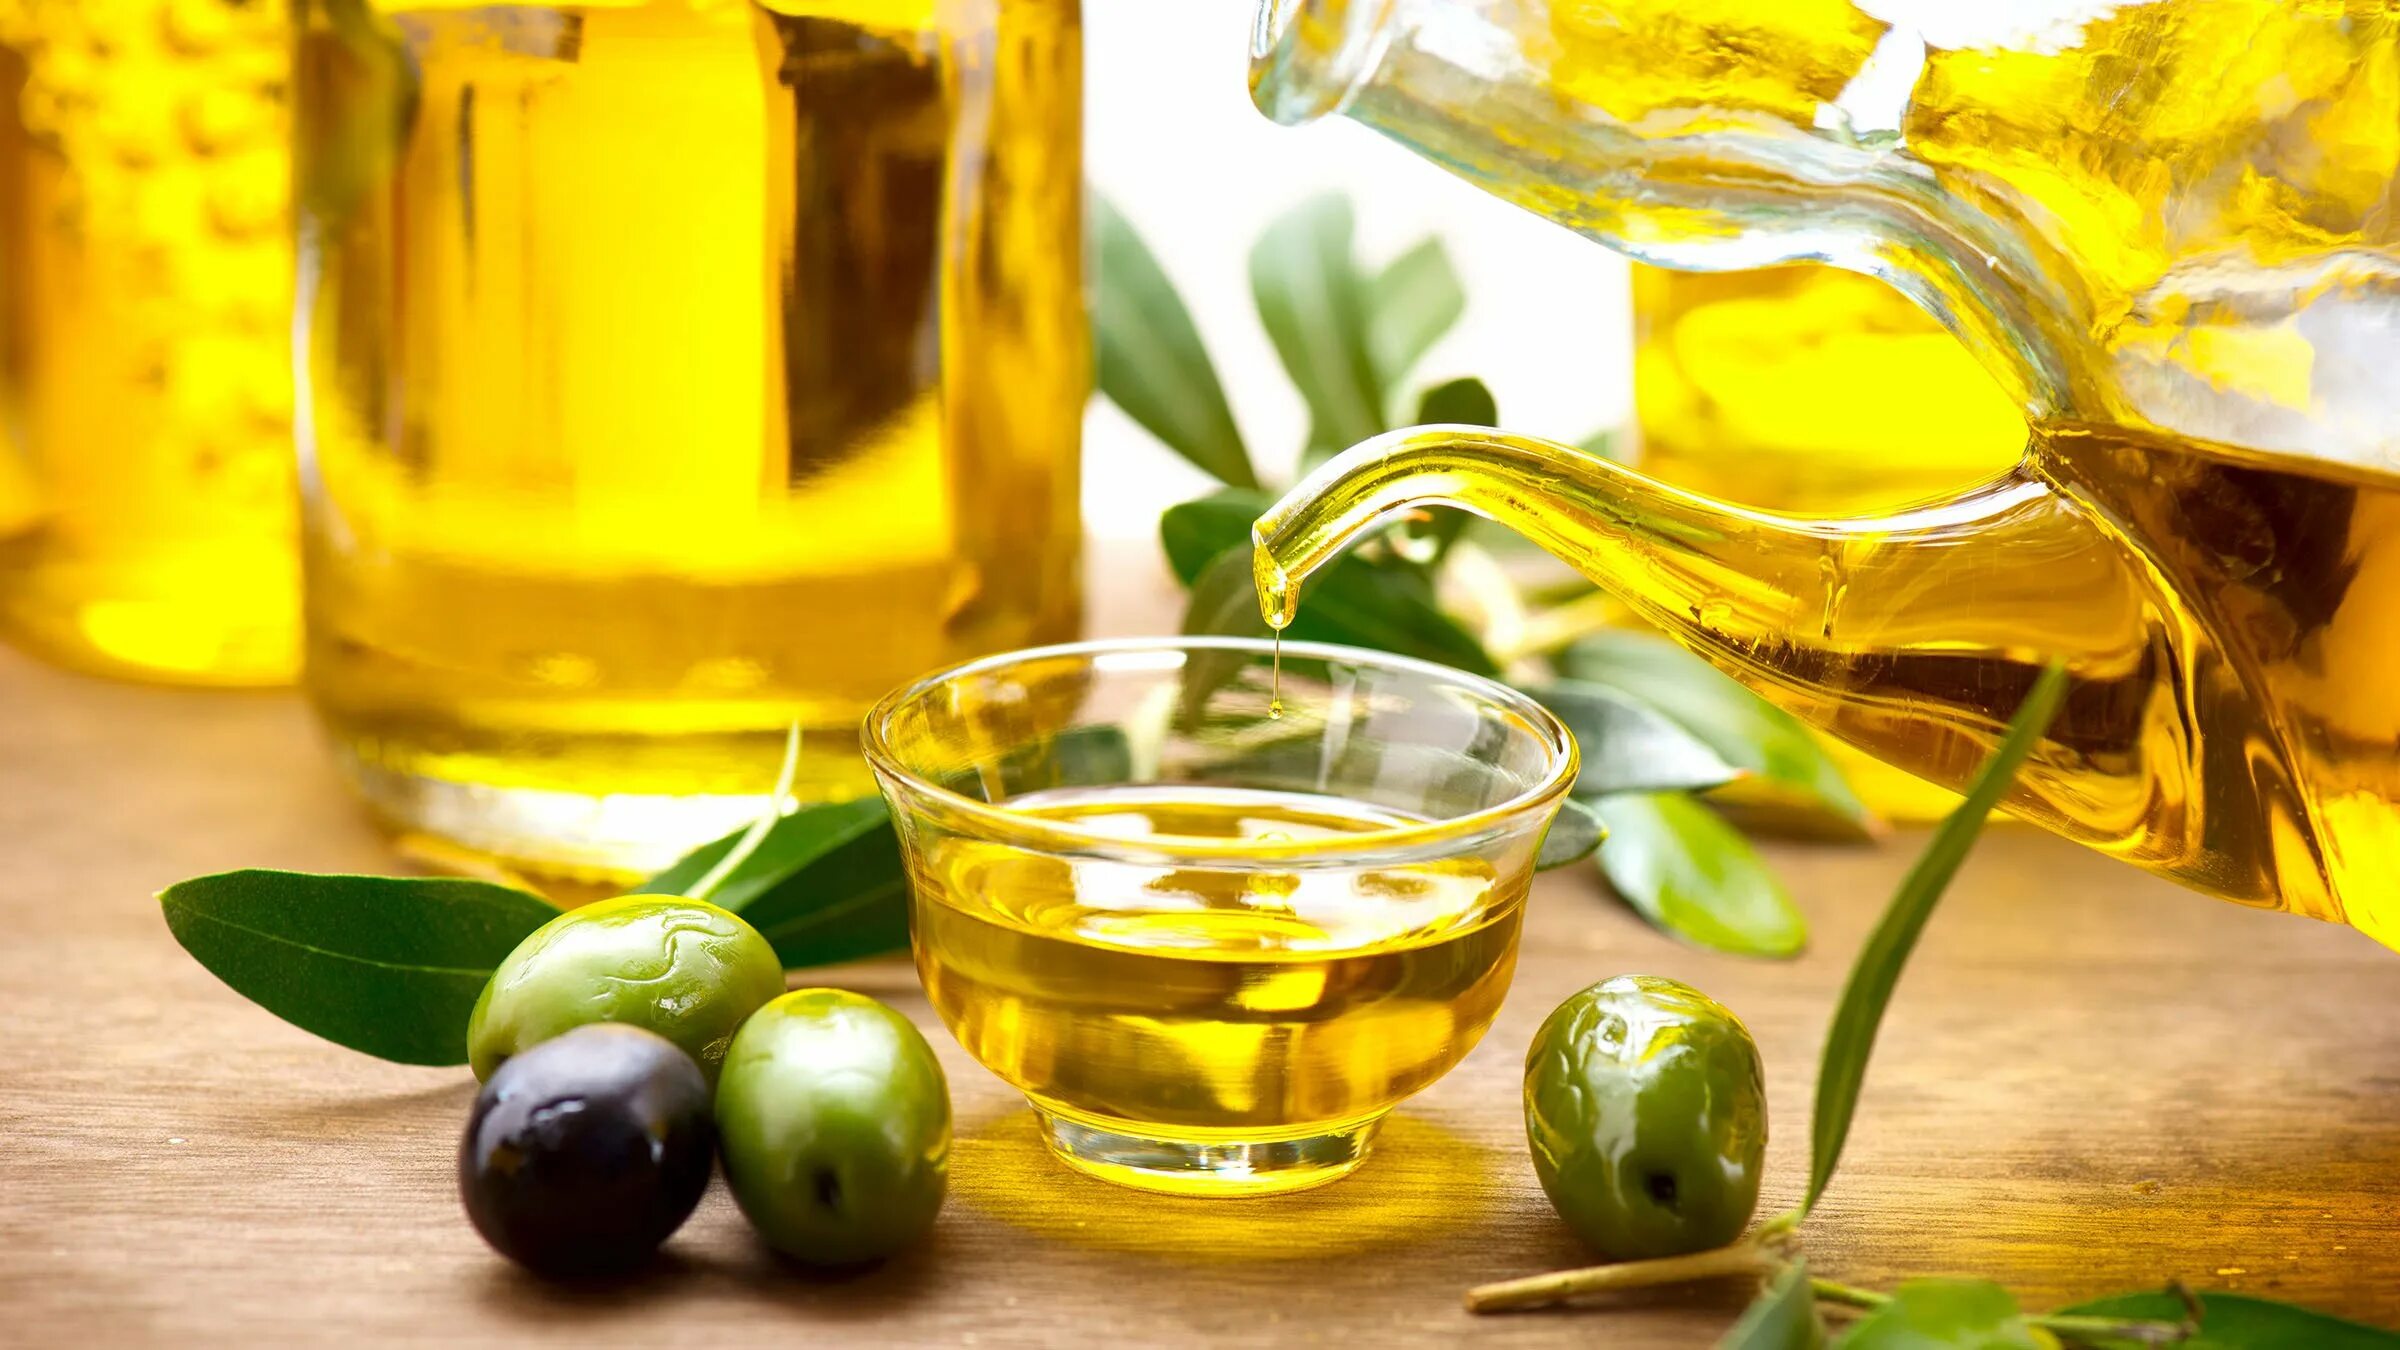 Оливковое масло. Оливковое масло в миске. Стакан воды и оливковое масло. Оливковое масло фото.